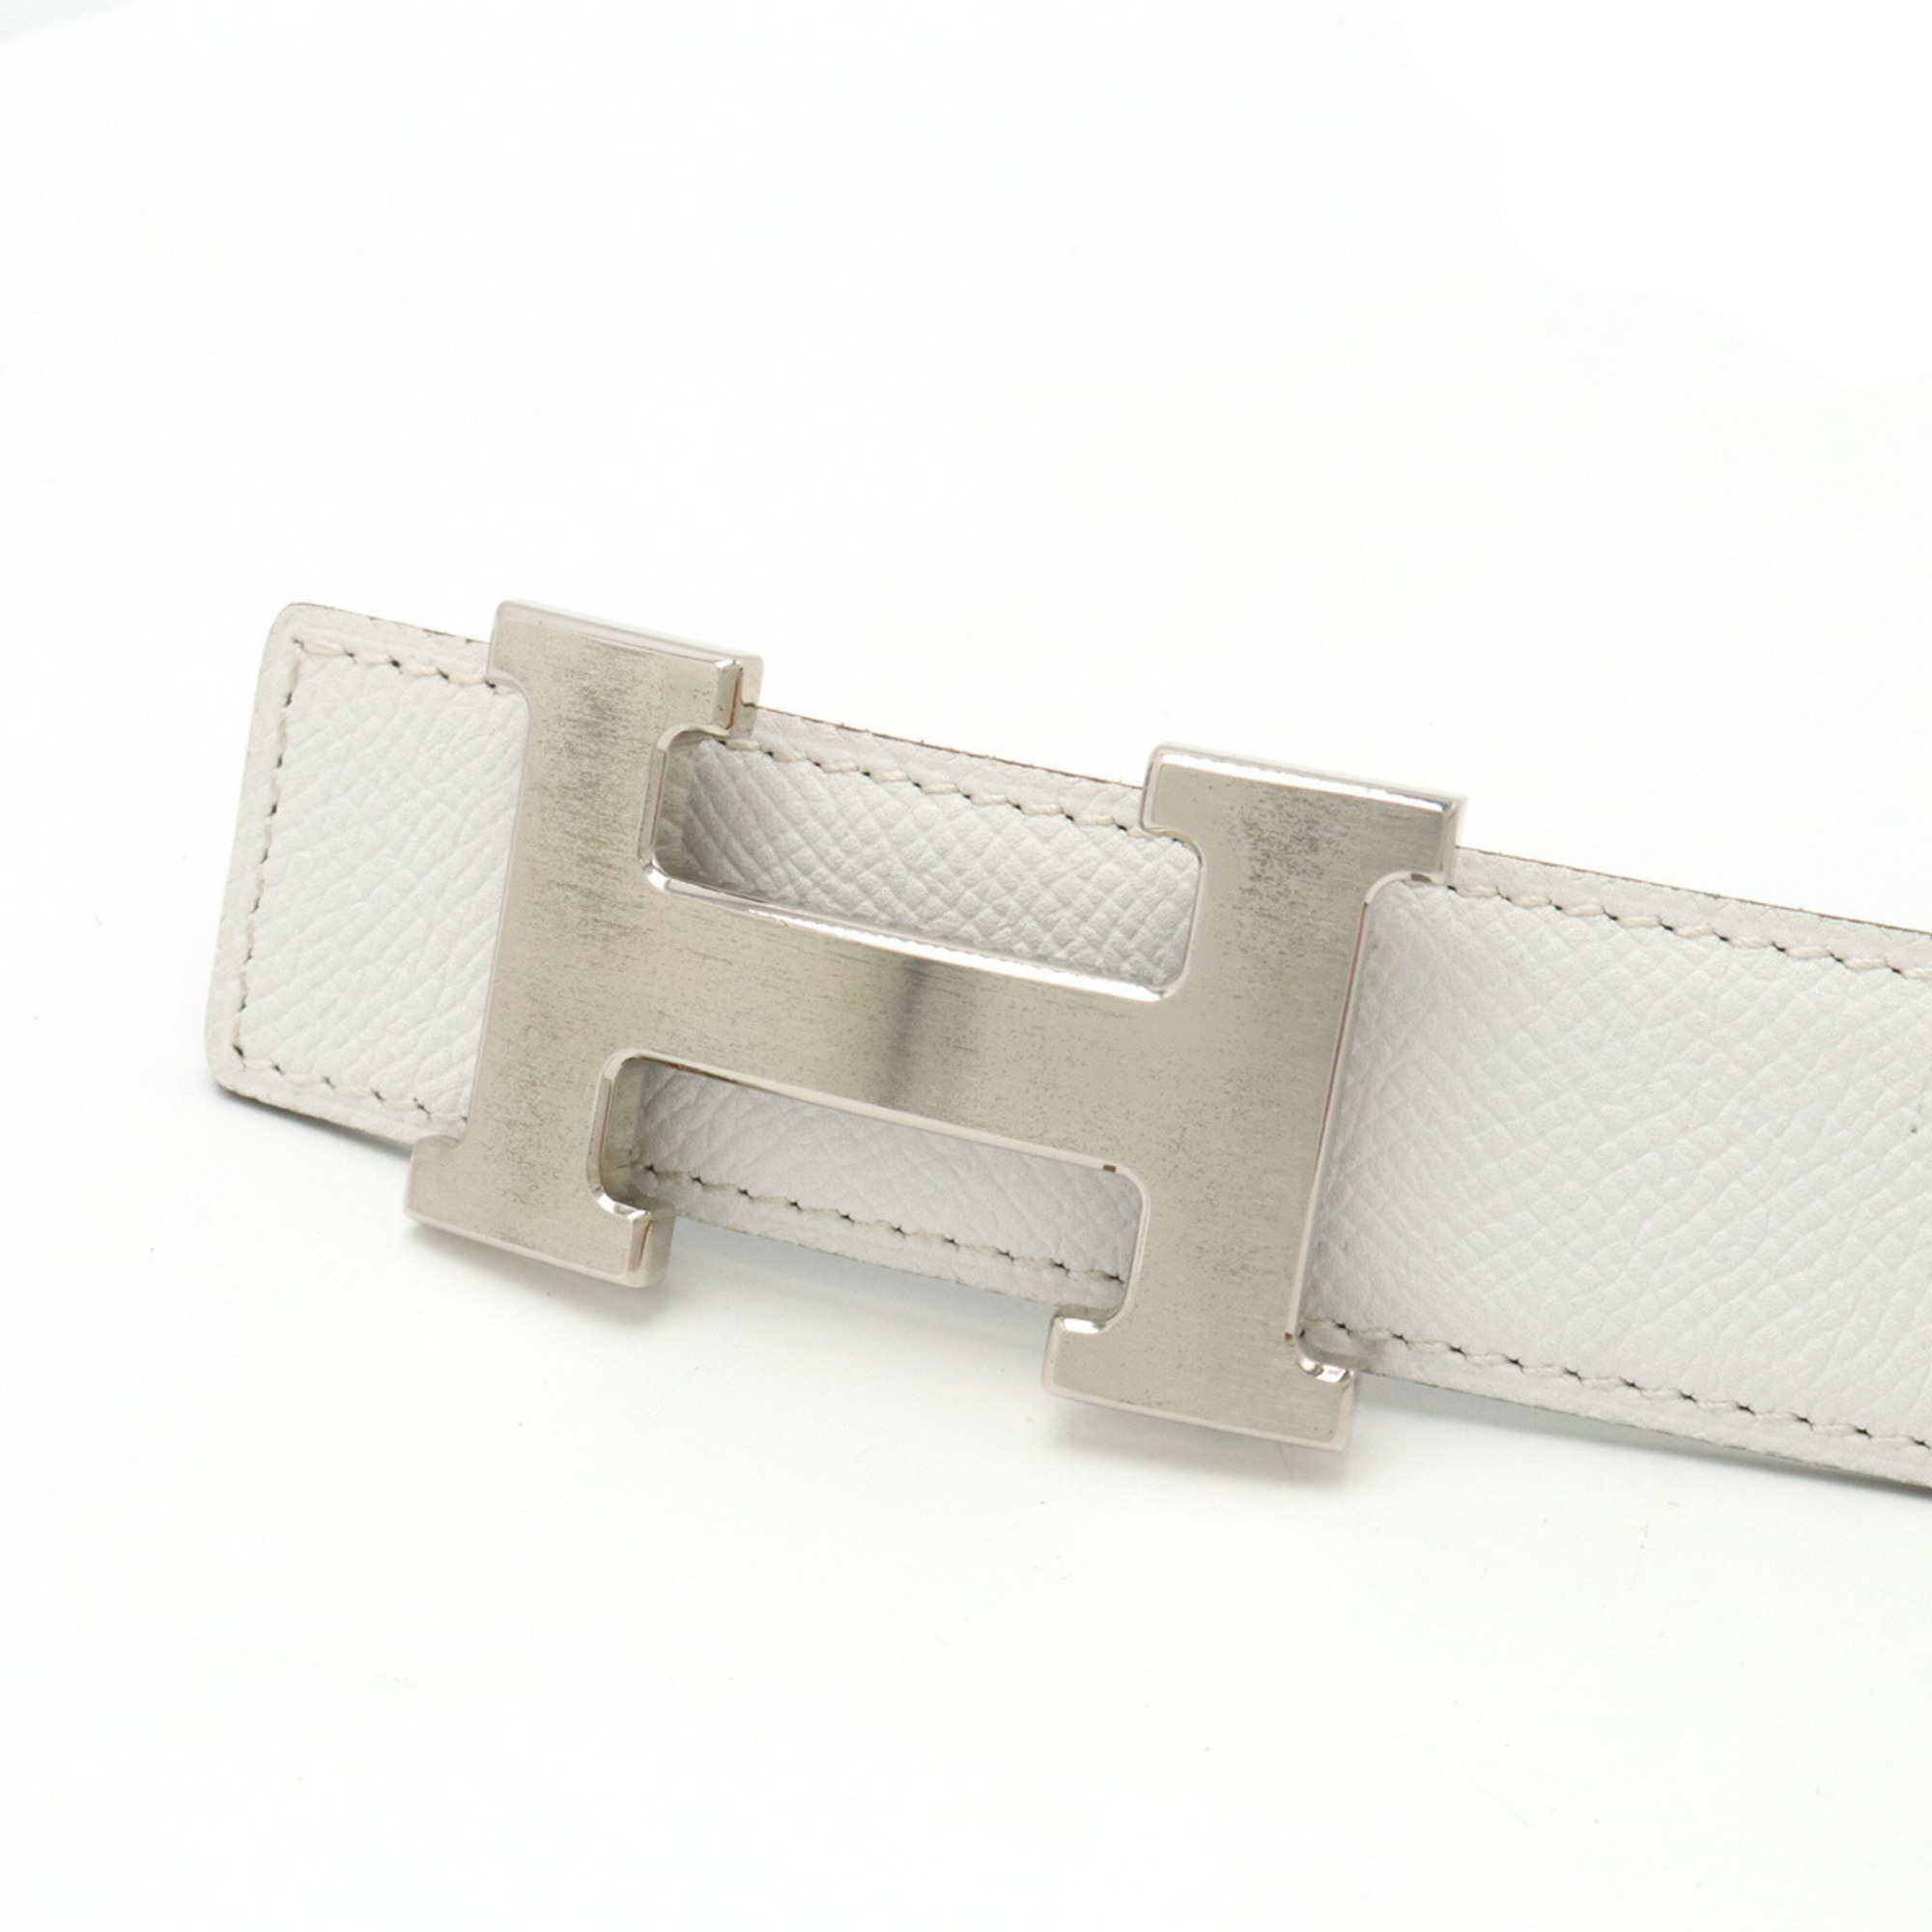 HERMES Constance H-belt, reversible, Epsom leather, Swift, white, black, #80, K stamp